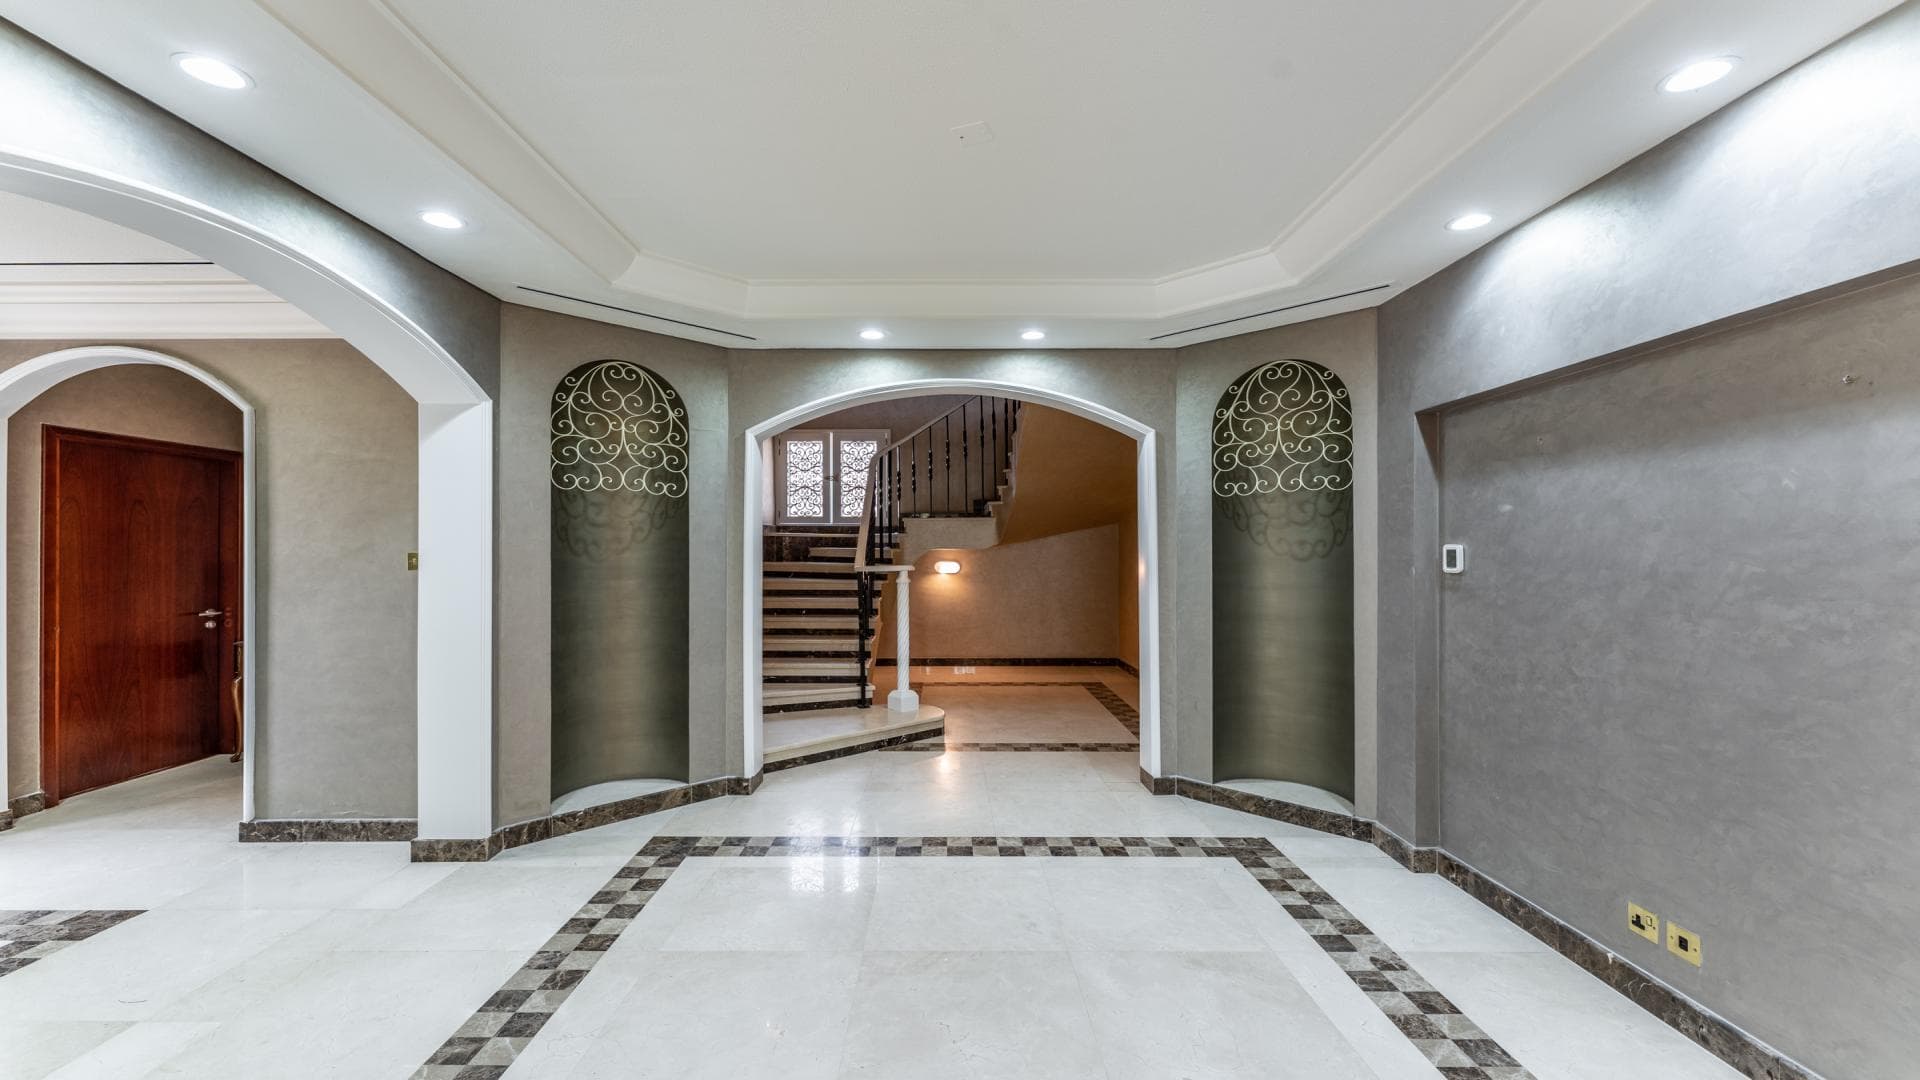 5 Bedroom Villa For Rent Al Thamam 36 Lp36037 1890e34e61f0b400.jpg